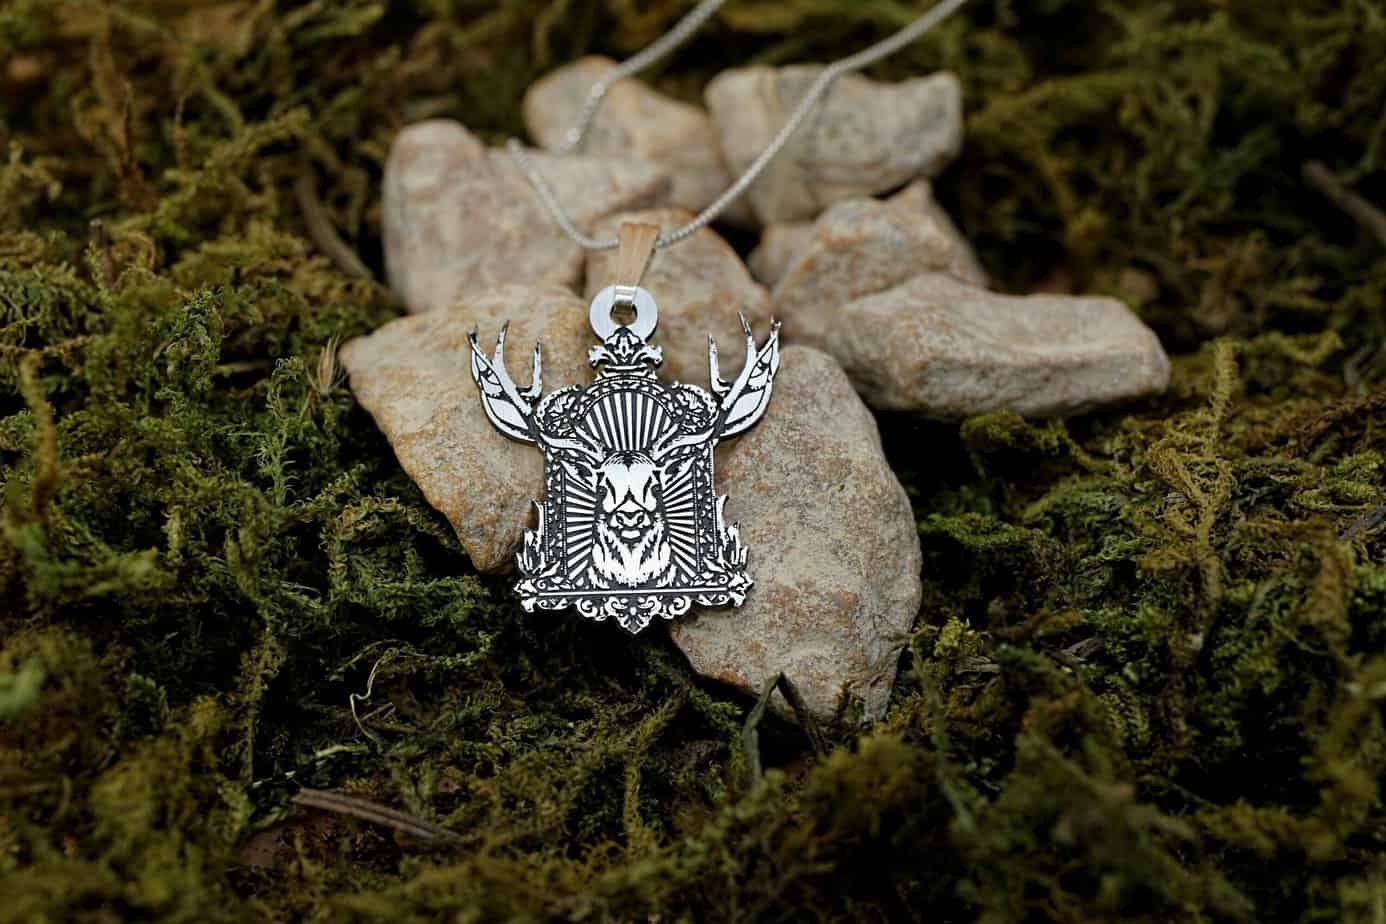 Elk Antler Necklace, Deer Antler Necklace, Caribou Antler Necklace, Moose Antler Necklace | Men’s Jewelry, Gift for Her, Best Friend Gift